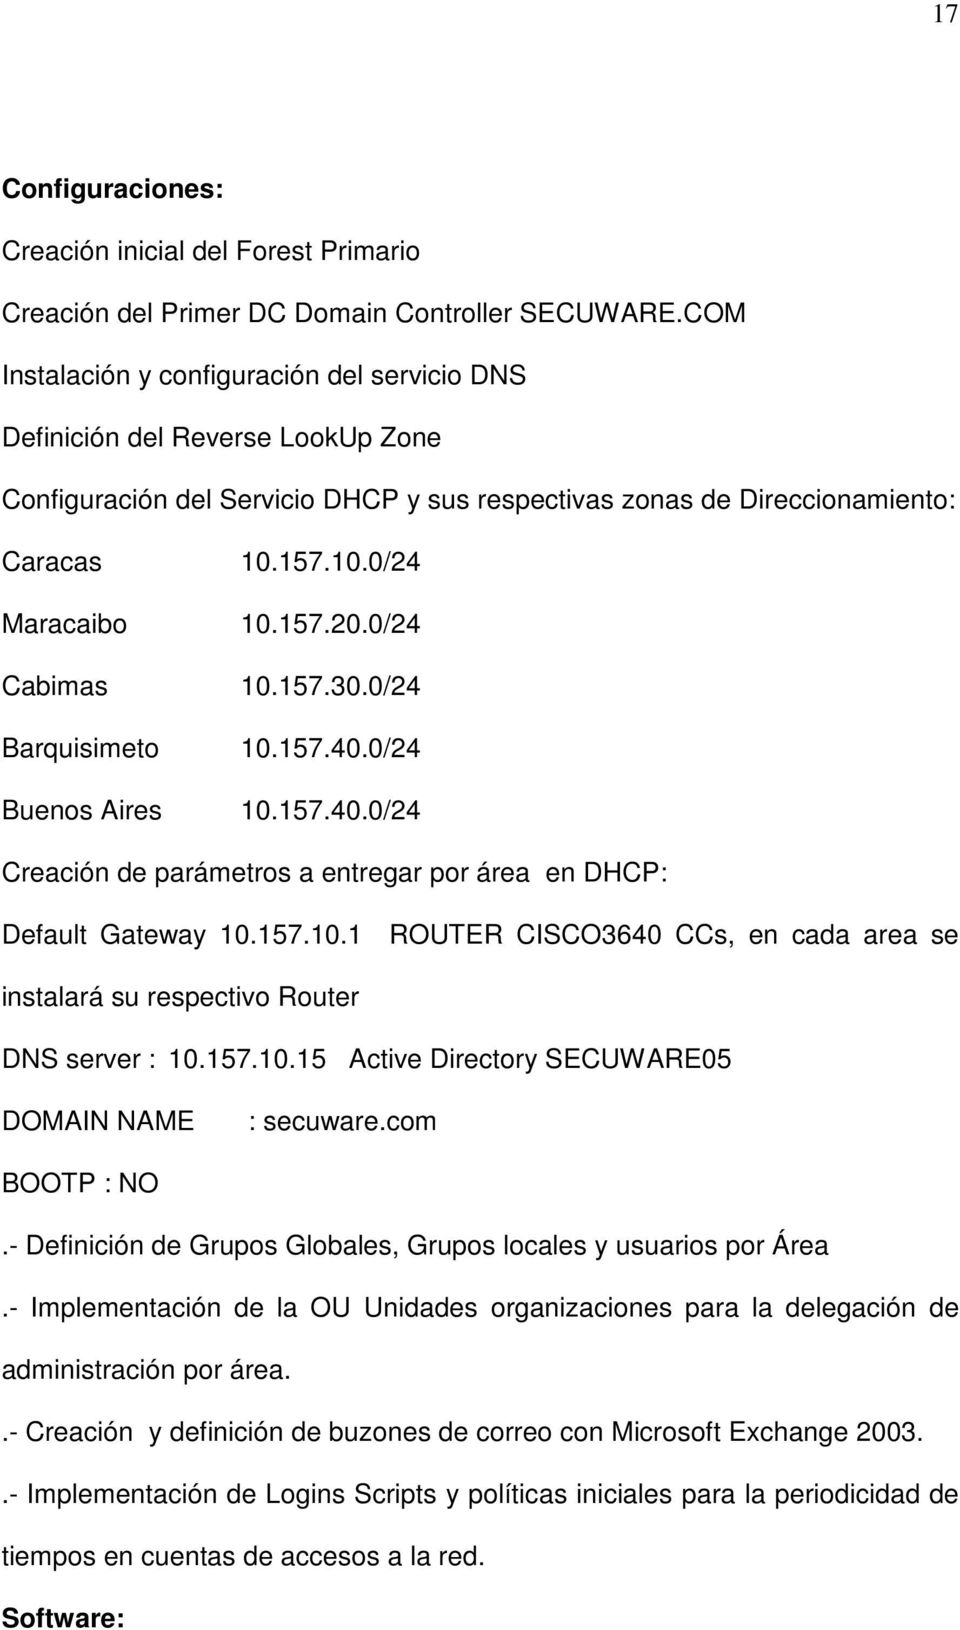 157.20.0/24 Cabimas 10.157.30.0/24 Barquisimeto 10.157.40.0/24 Buenos Aires 10.157.40.0/24 Creación de parámetros a entregar por área en DHCP: Default Gateway 10.157.10.1 ROUTER CISCO3640 CCs, en cada area se instalará su respectivo Router DNS server : 10.